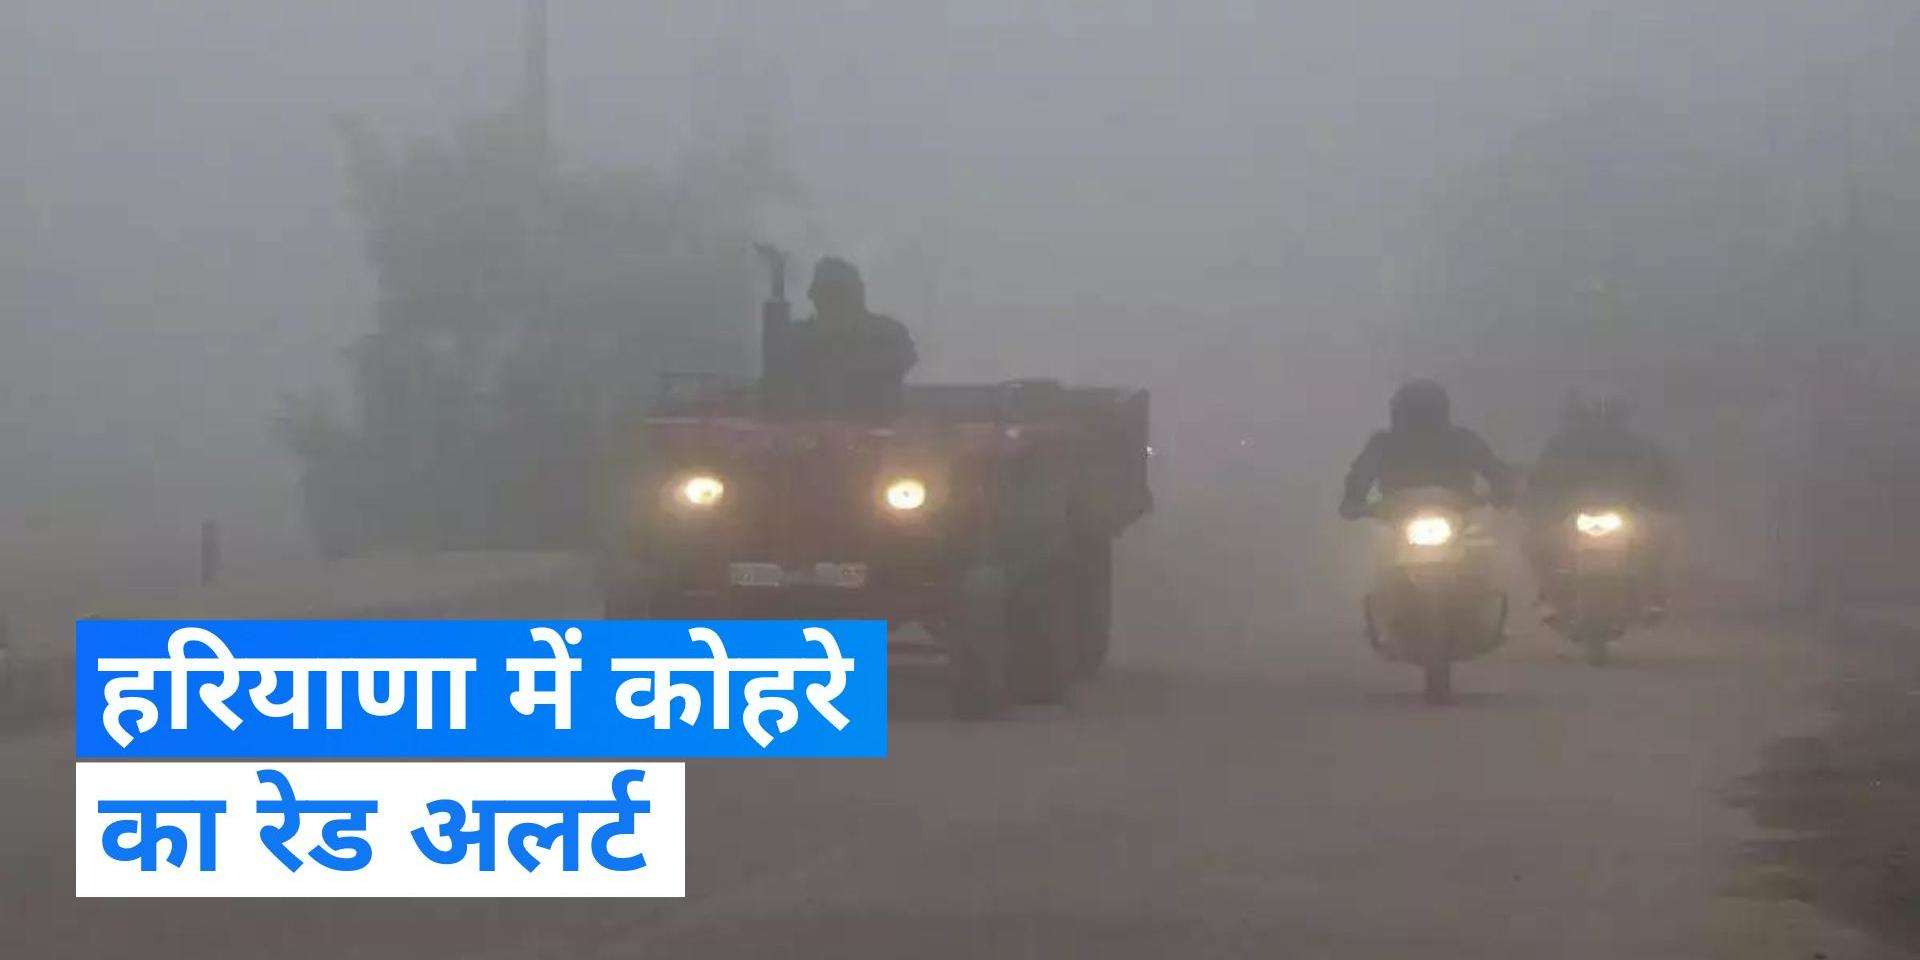 Haryana Weather News: हरियाणा में छाया भयंकर कोहरा, मौसम विभाग ने जारी किया अलर्ट